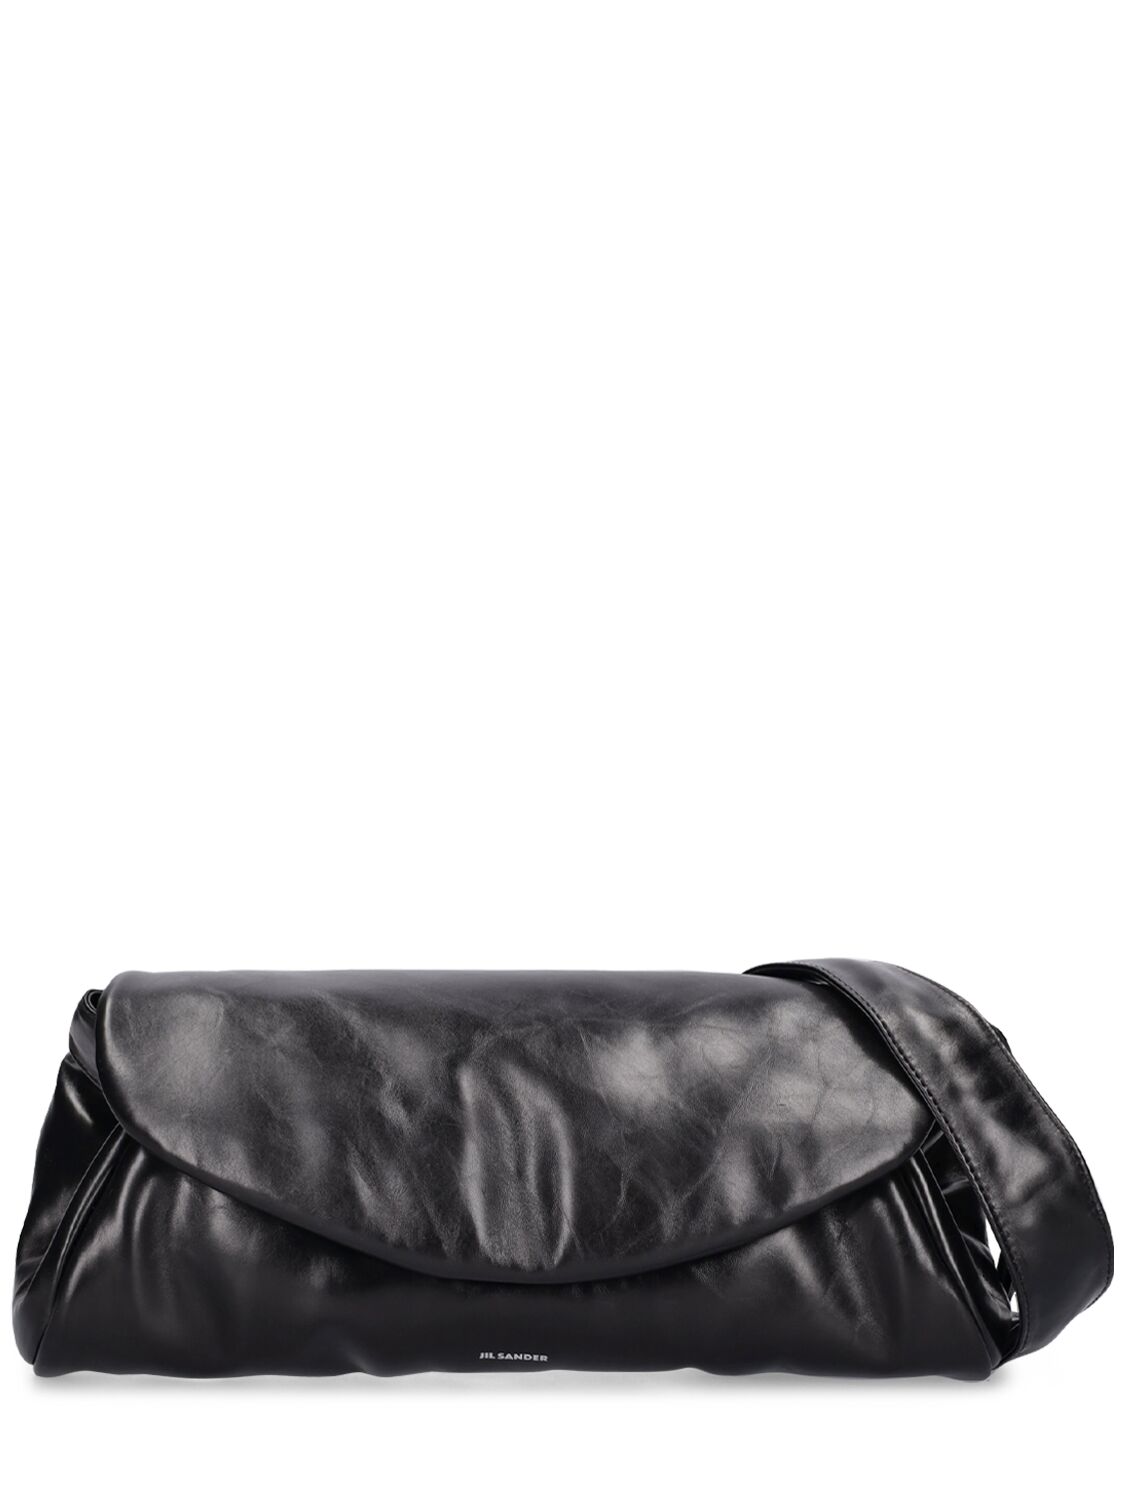 Jil Sander Large Cannolo Padded Shoulder Bag In Black